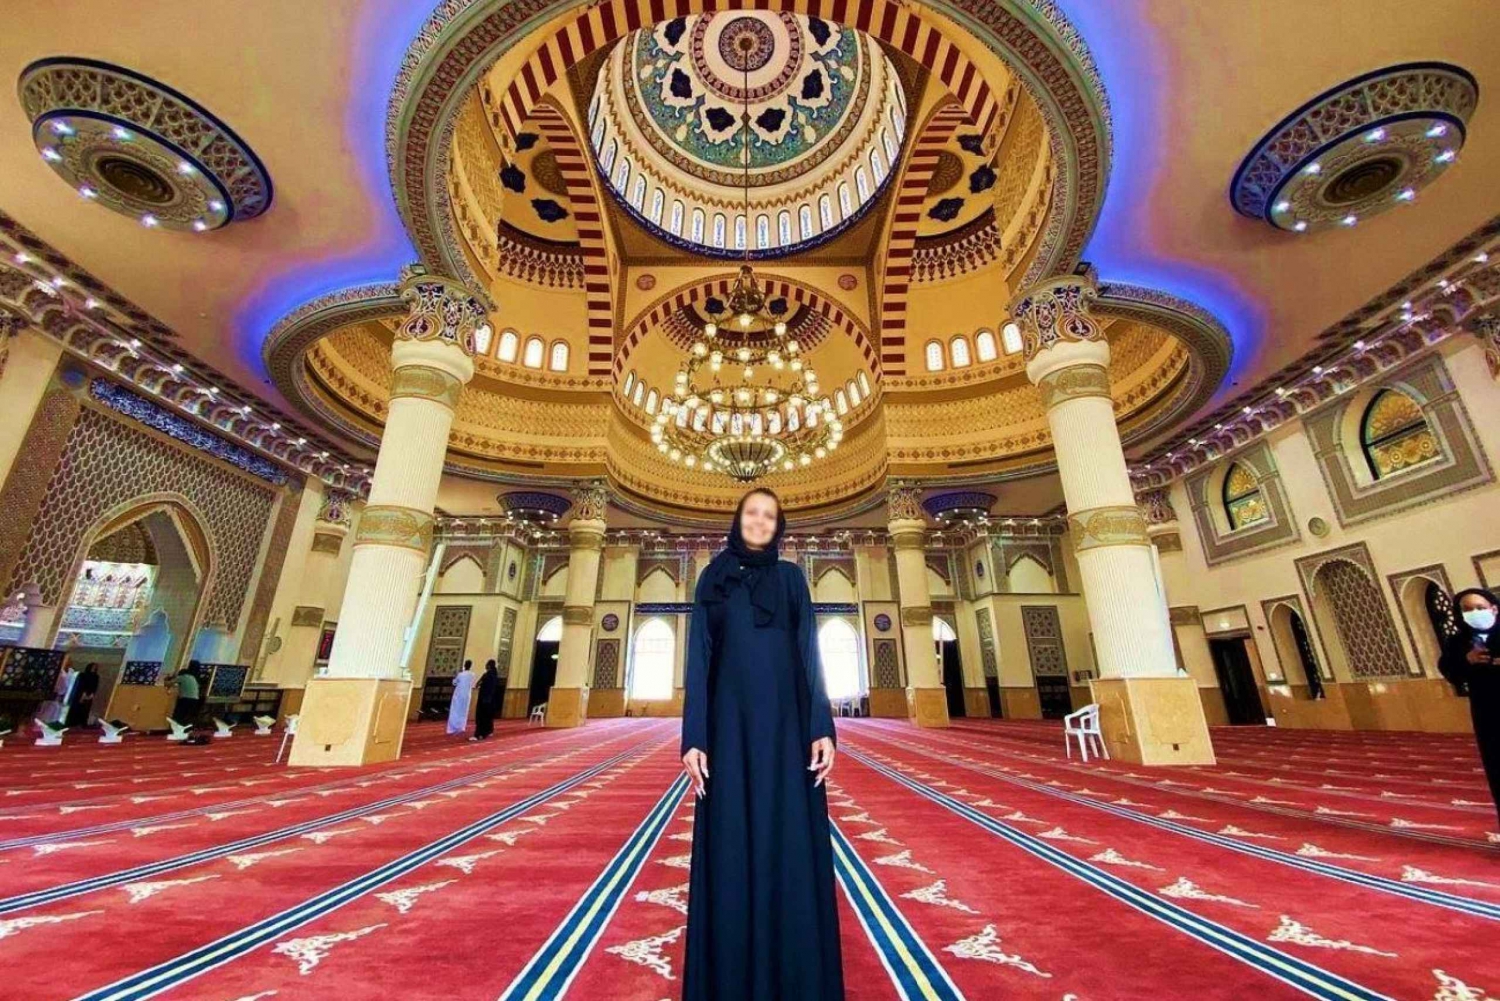 Dubai: Zocos, paseo en barco, marco, entrada y vestido de la Mezquita Azul